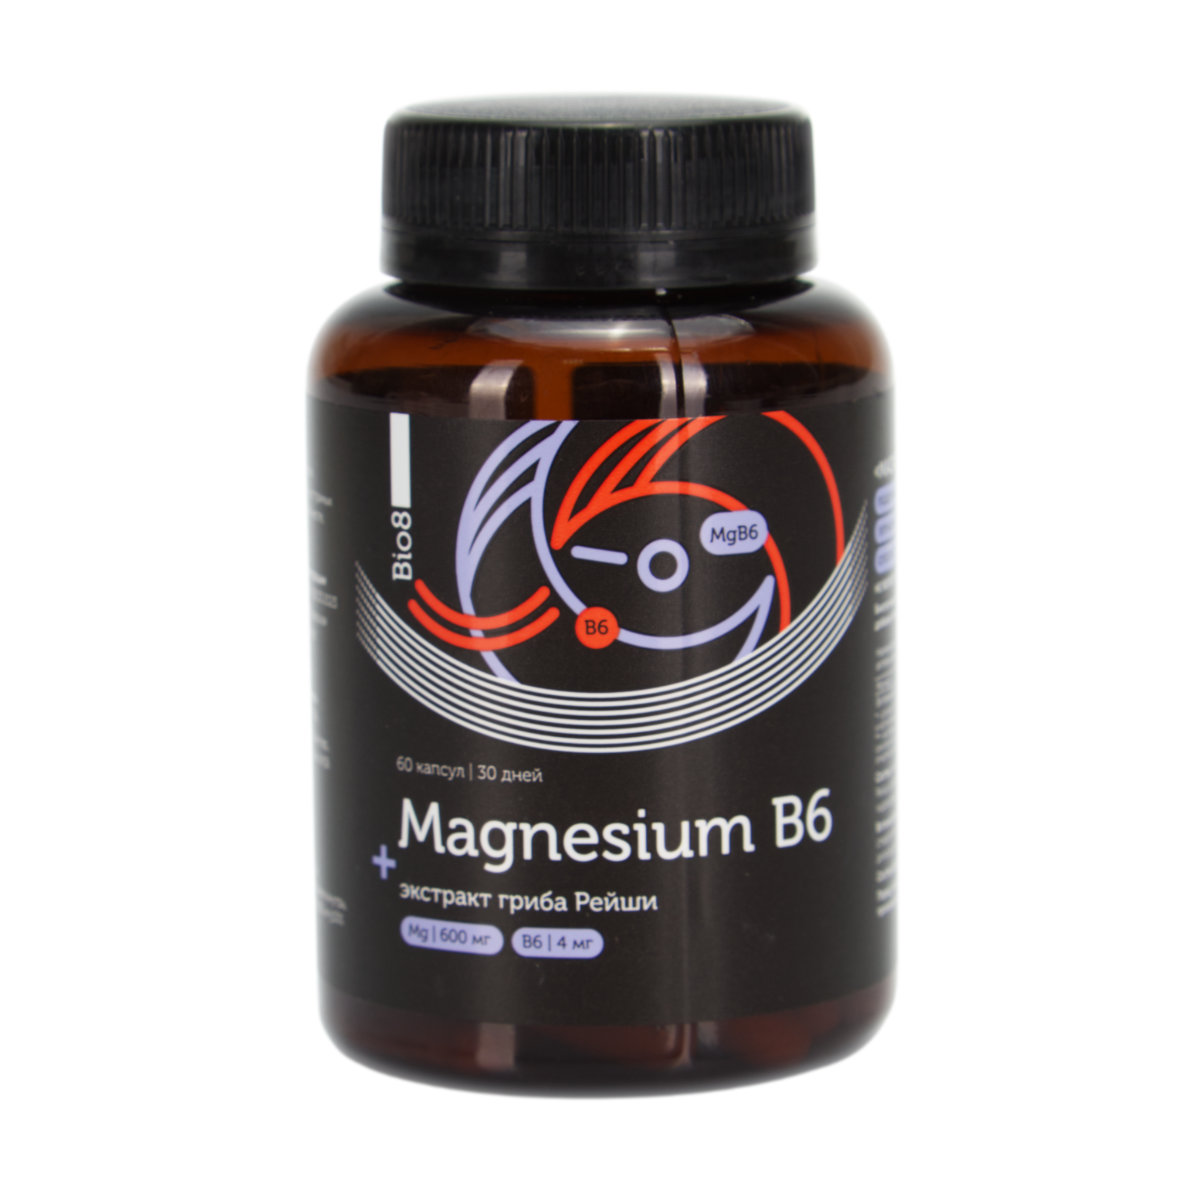 Магнезиум B6 + экстракт гриба Рейши Bio8, капсулы (60 шт.)